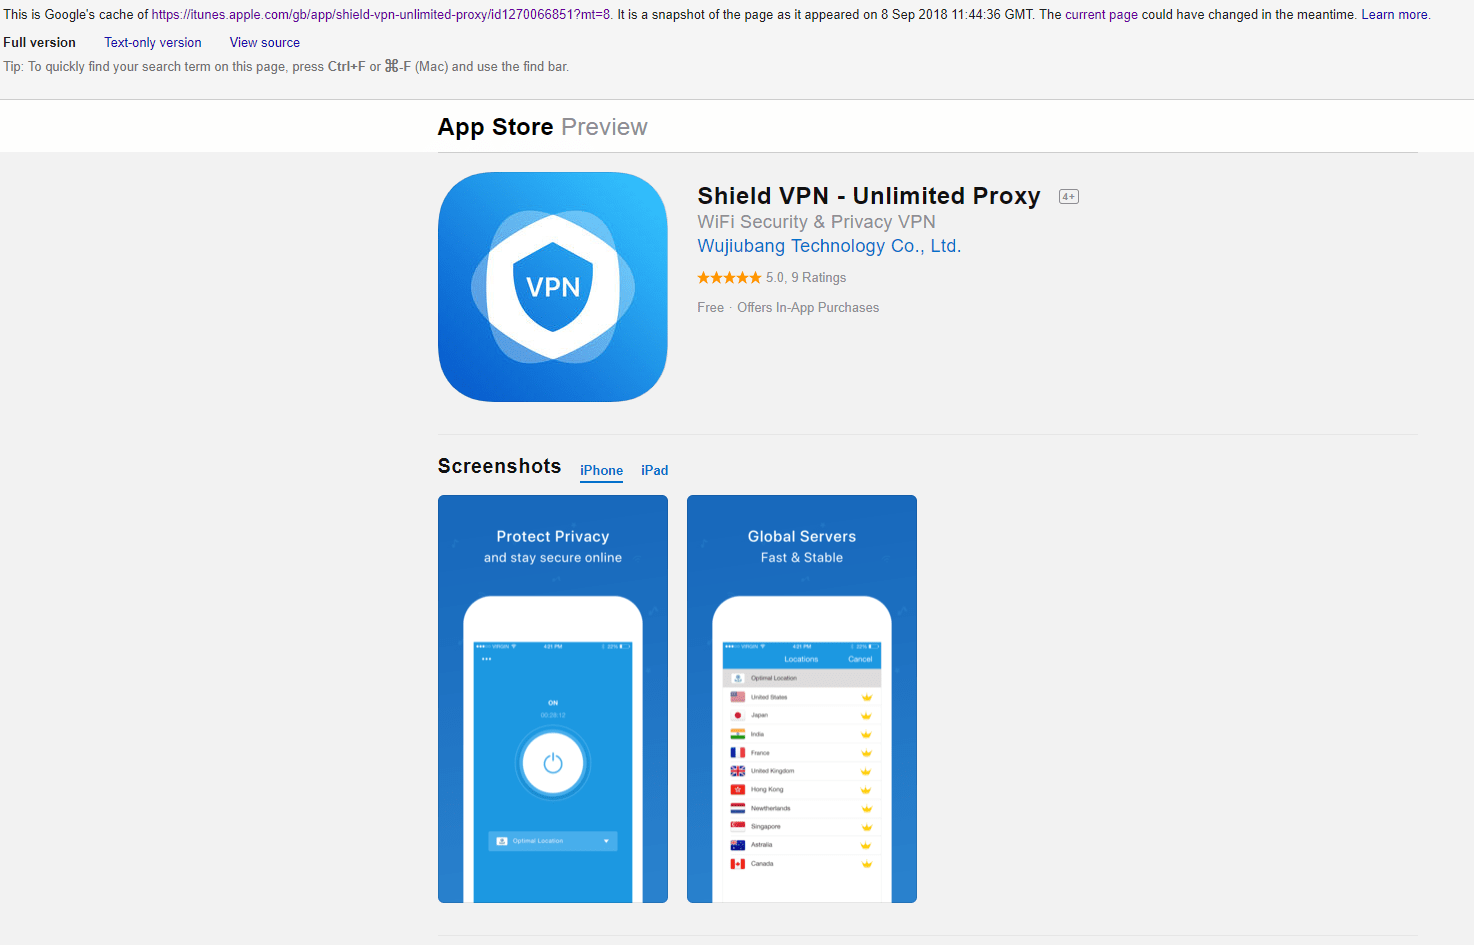 Shield VPN - spremljena snimka zaslona s popisom aplikacija u App Storeu